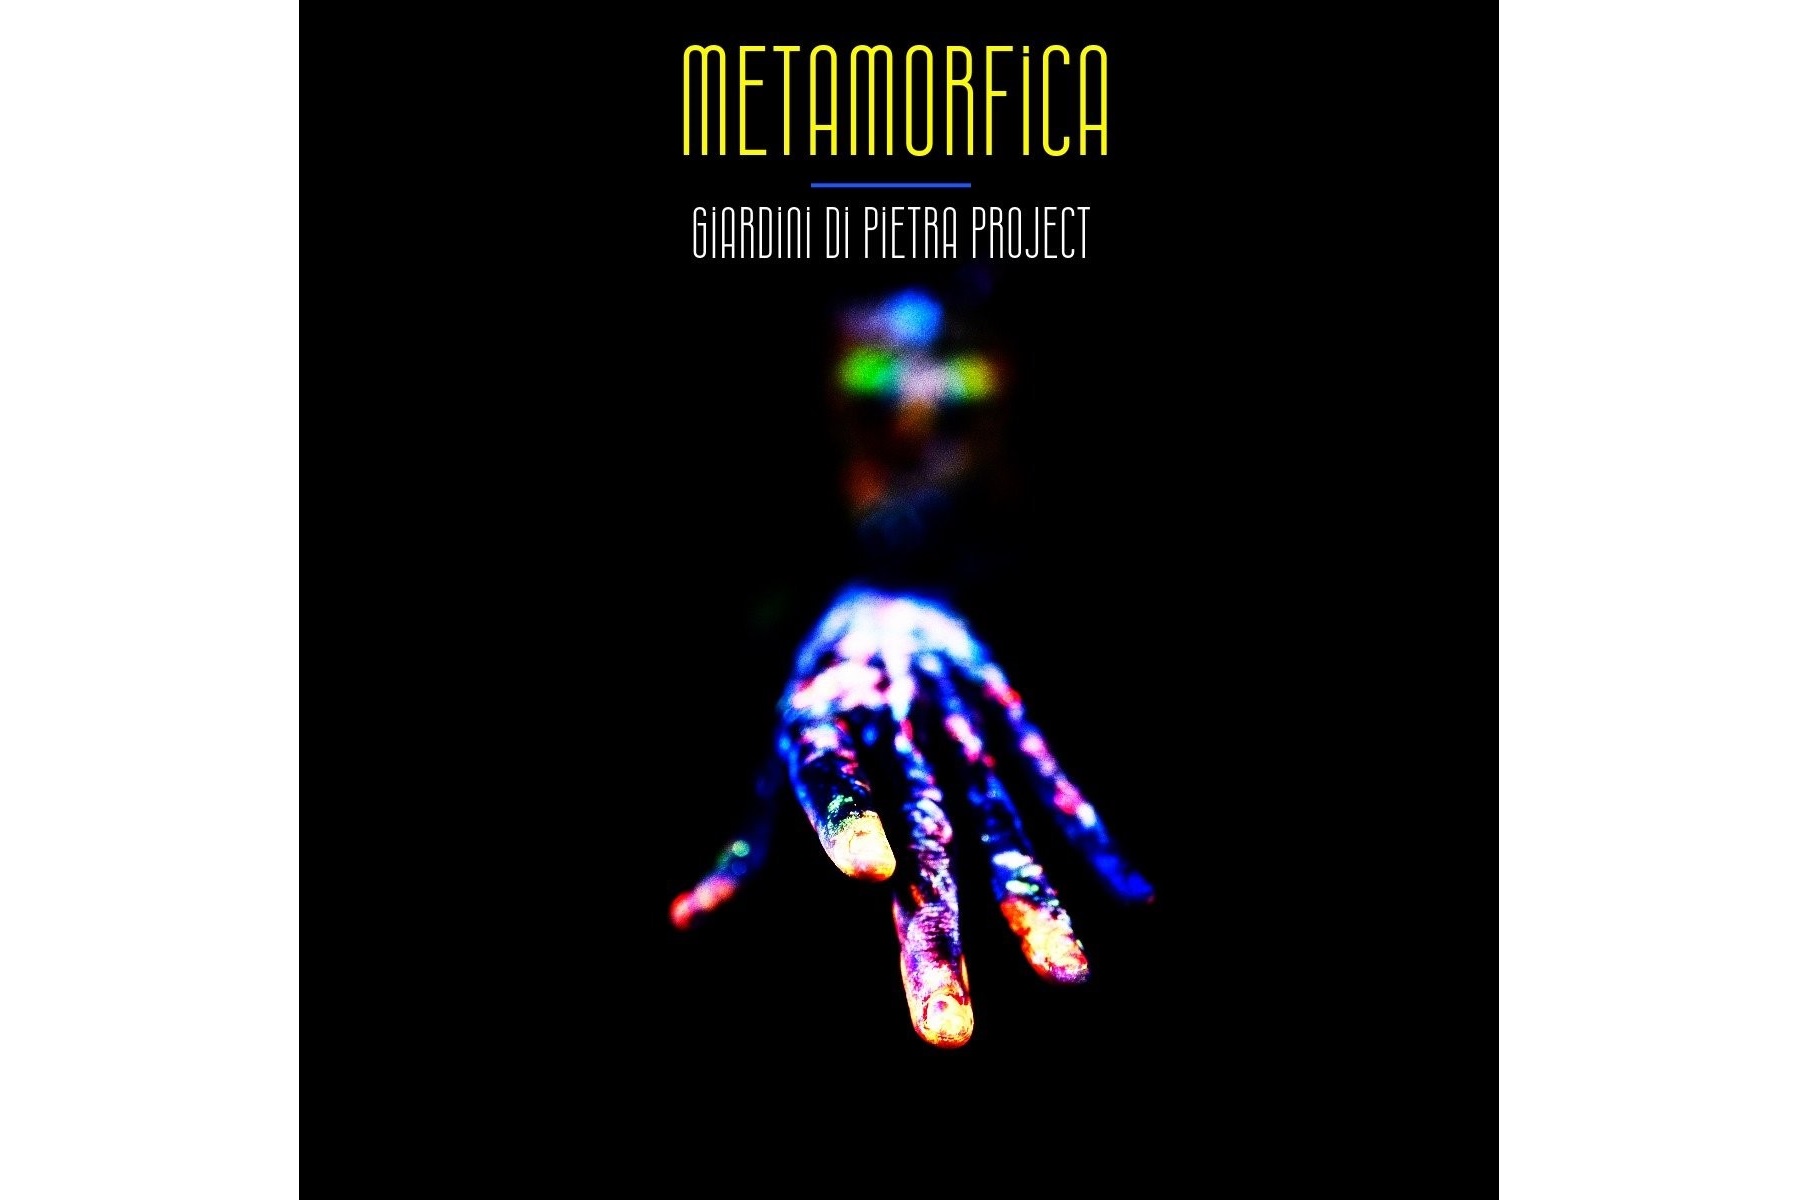 Il nuovo singolo dei Giardini di Pietra Project: "Metamorfica"